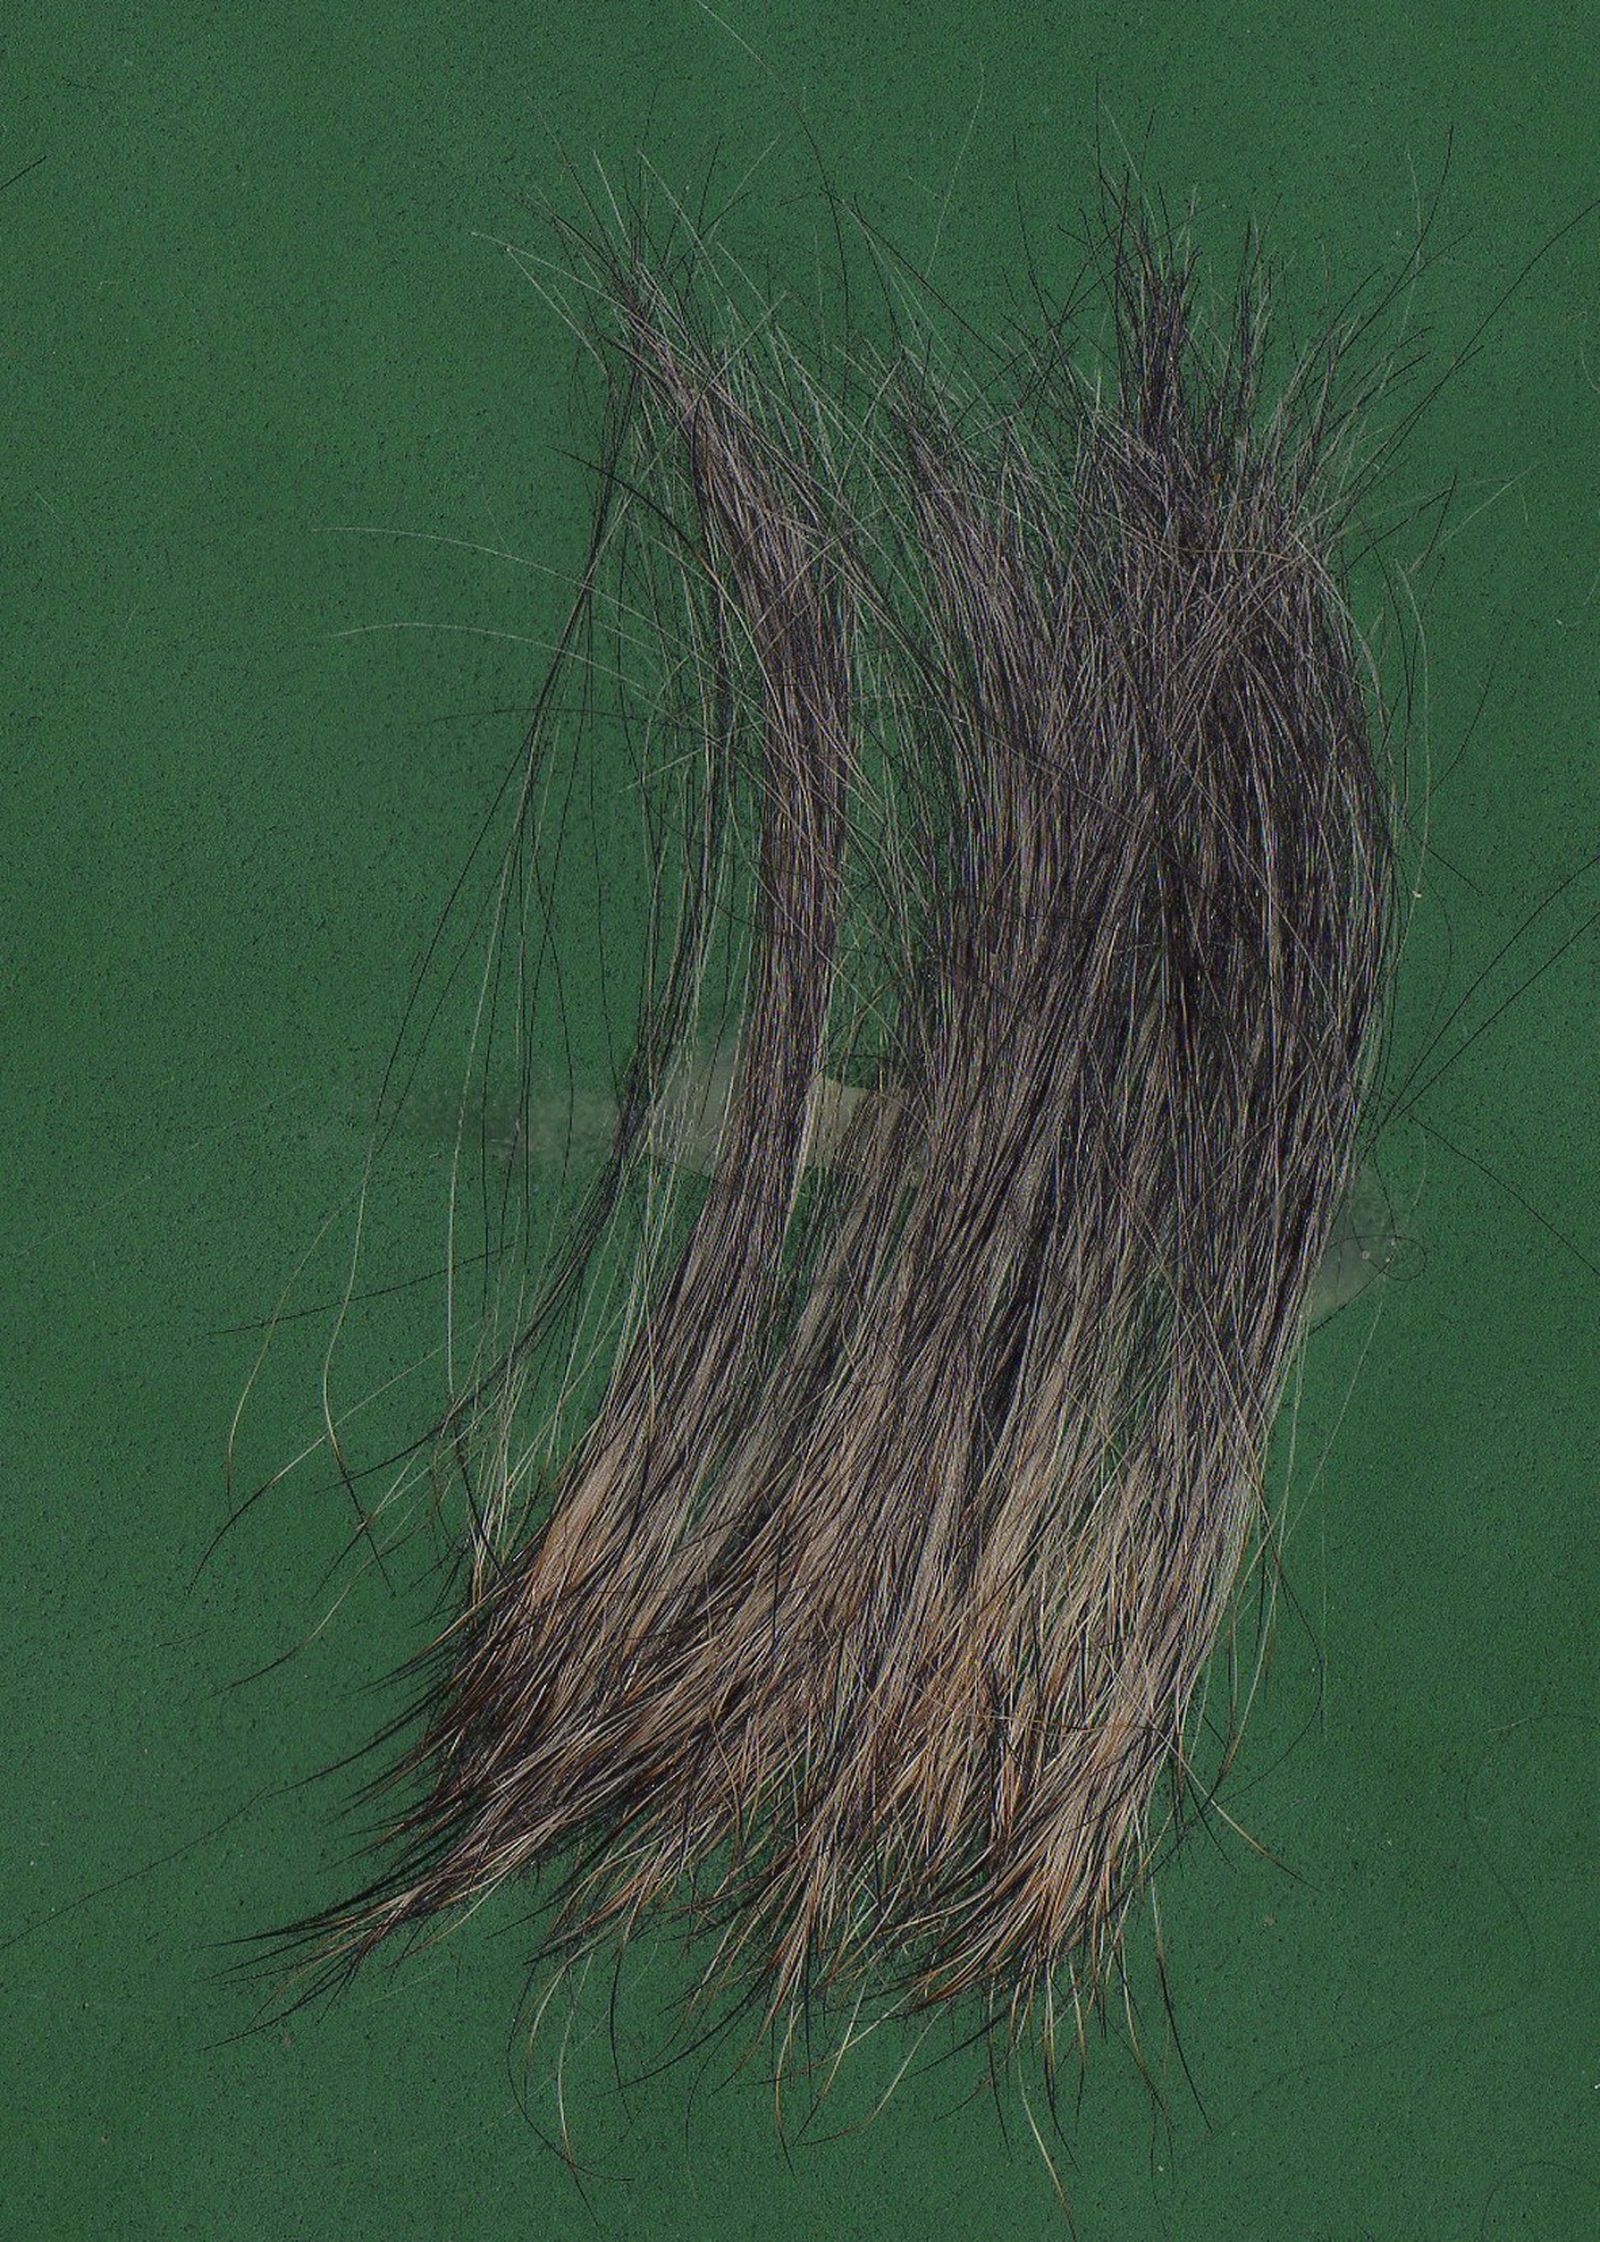 Haare vom Rauhaardackel auf grünem Untergrund mit längerer und weicher Haarstruktur